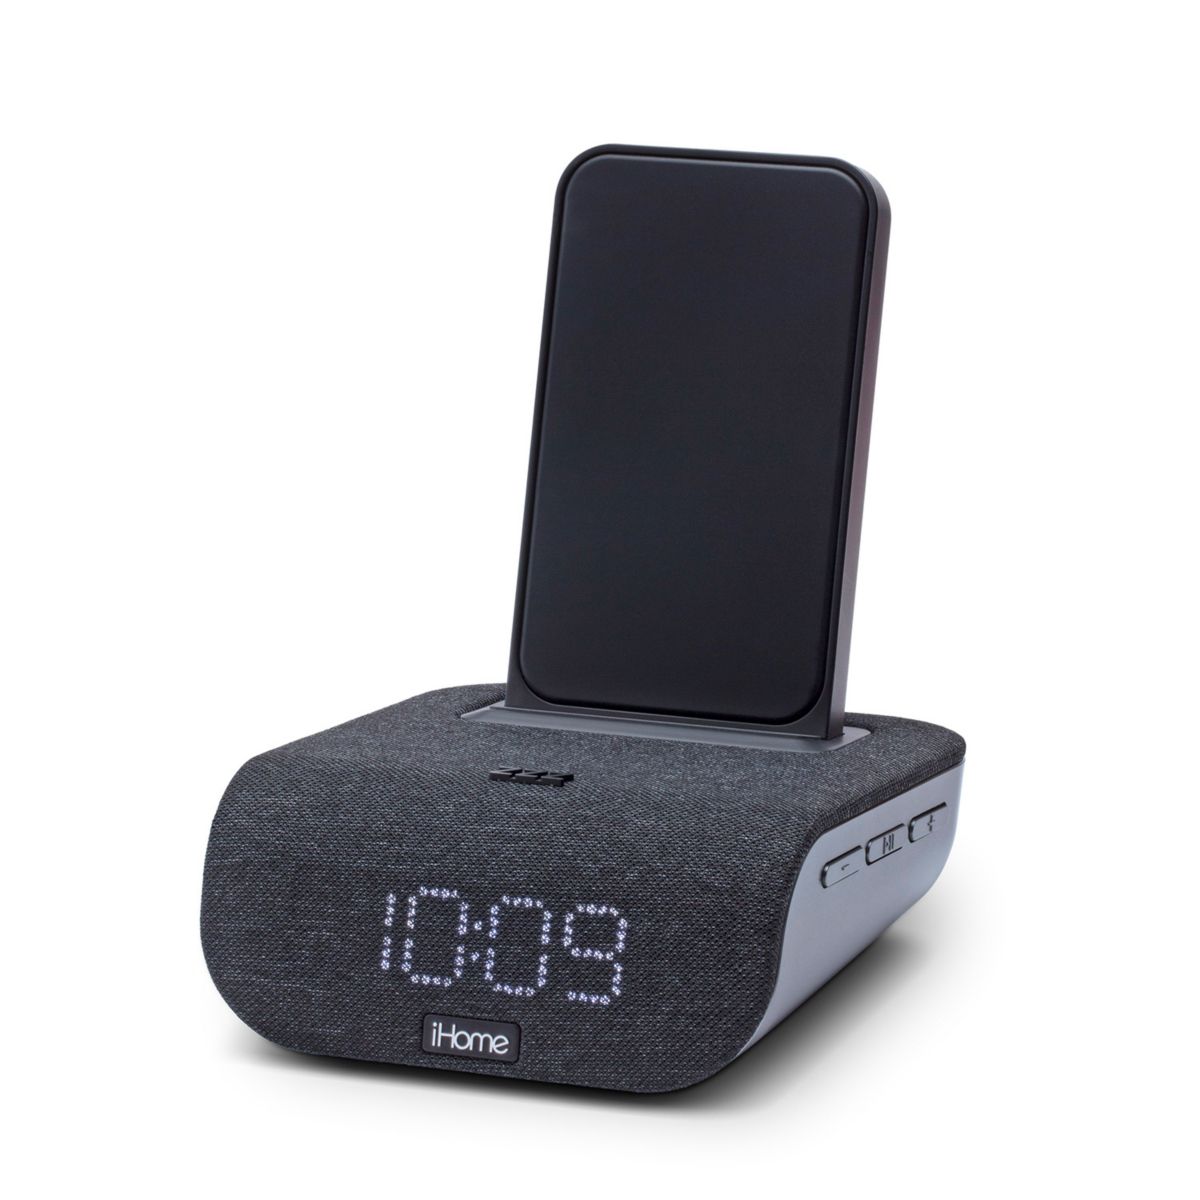 Будильник iHome Timebase Bluetooth с беспроводной связью и зарядкой через USB IHome